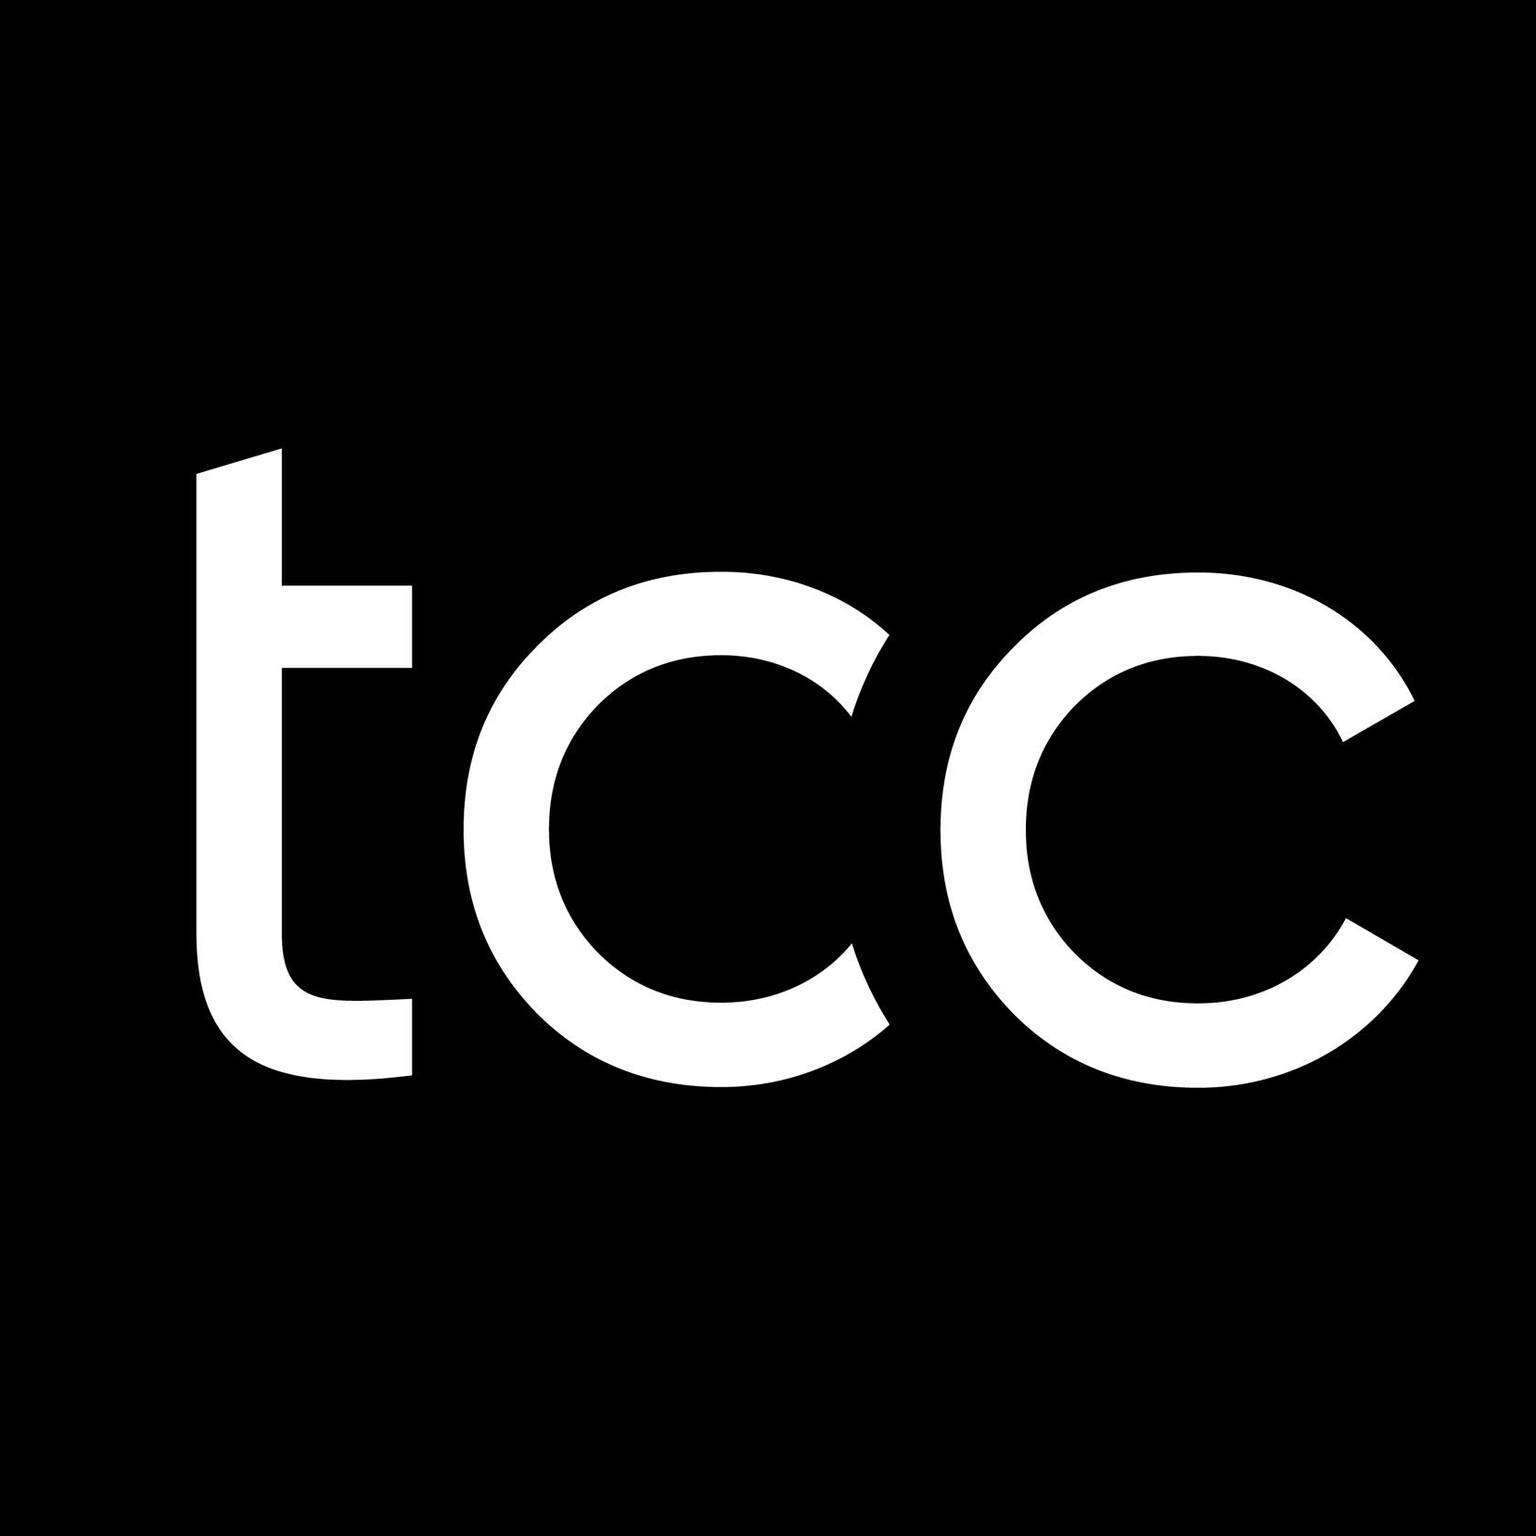 Logo Công ty Cổ phần TCC & Partners